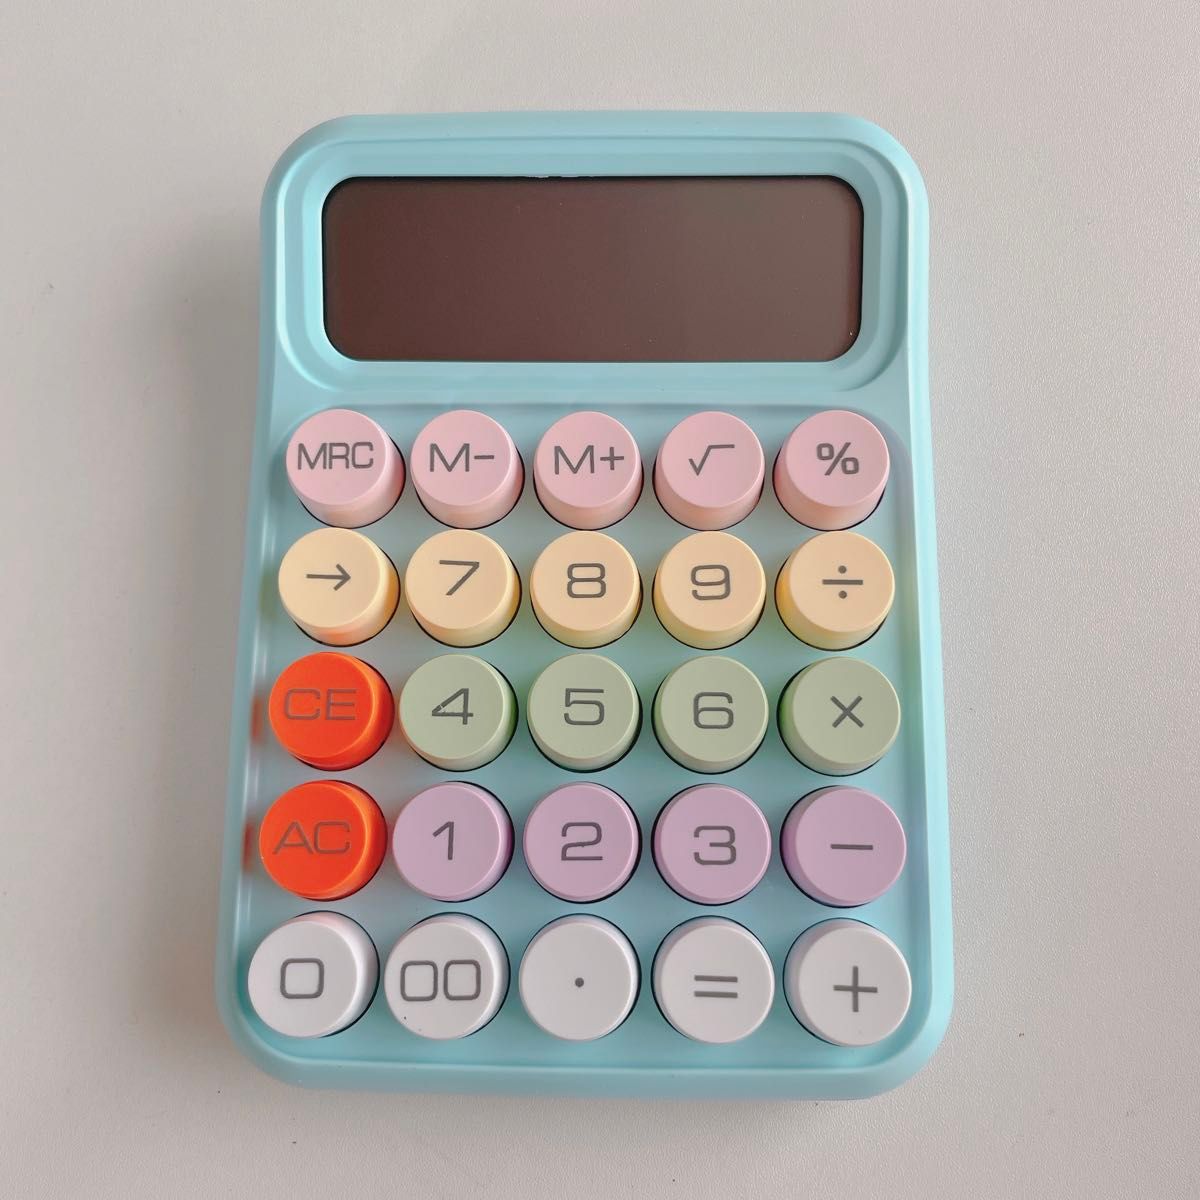 カラフル丸ボタンが可愛い電卓 水色 ブルー 計算機 オフィス用品 家計簿 計算 会計 事務用品 文房具 韓国風 自動オフ機能付き